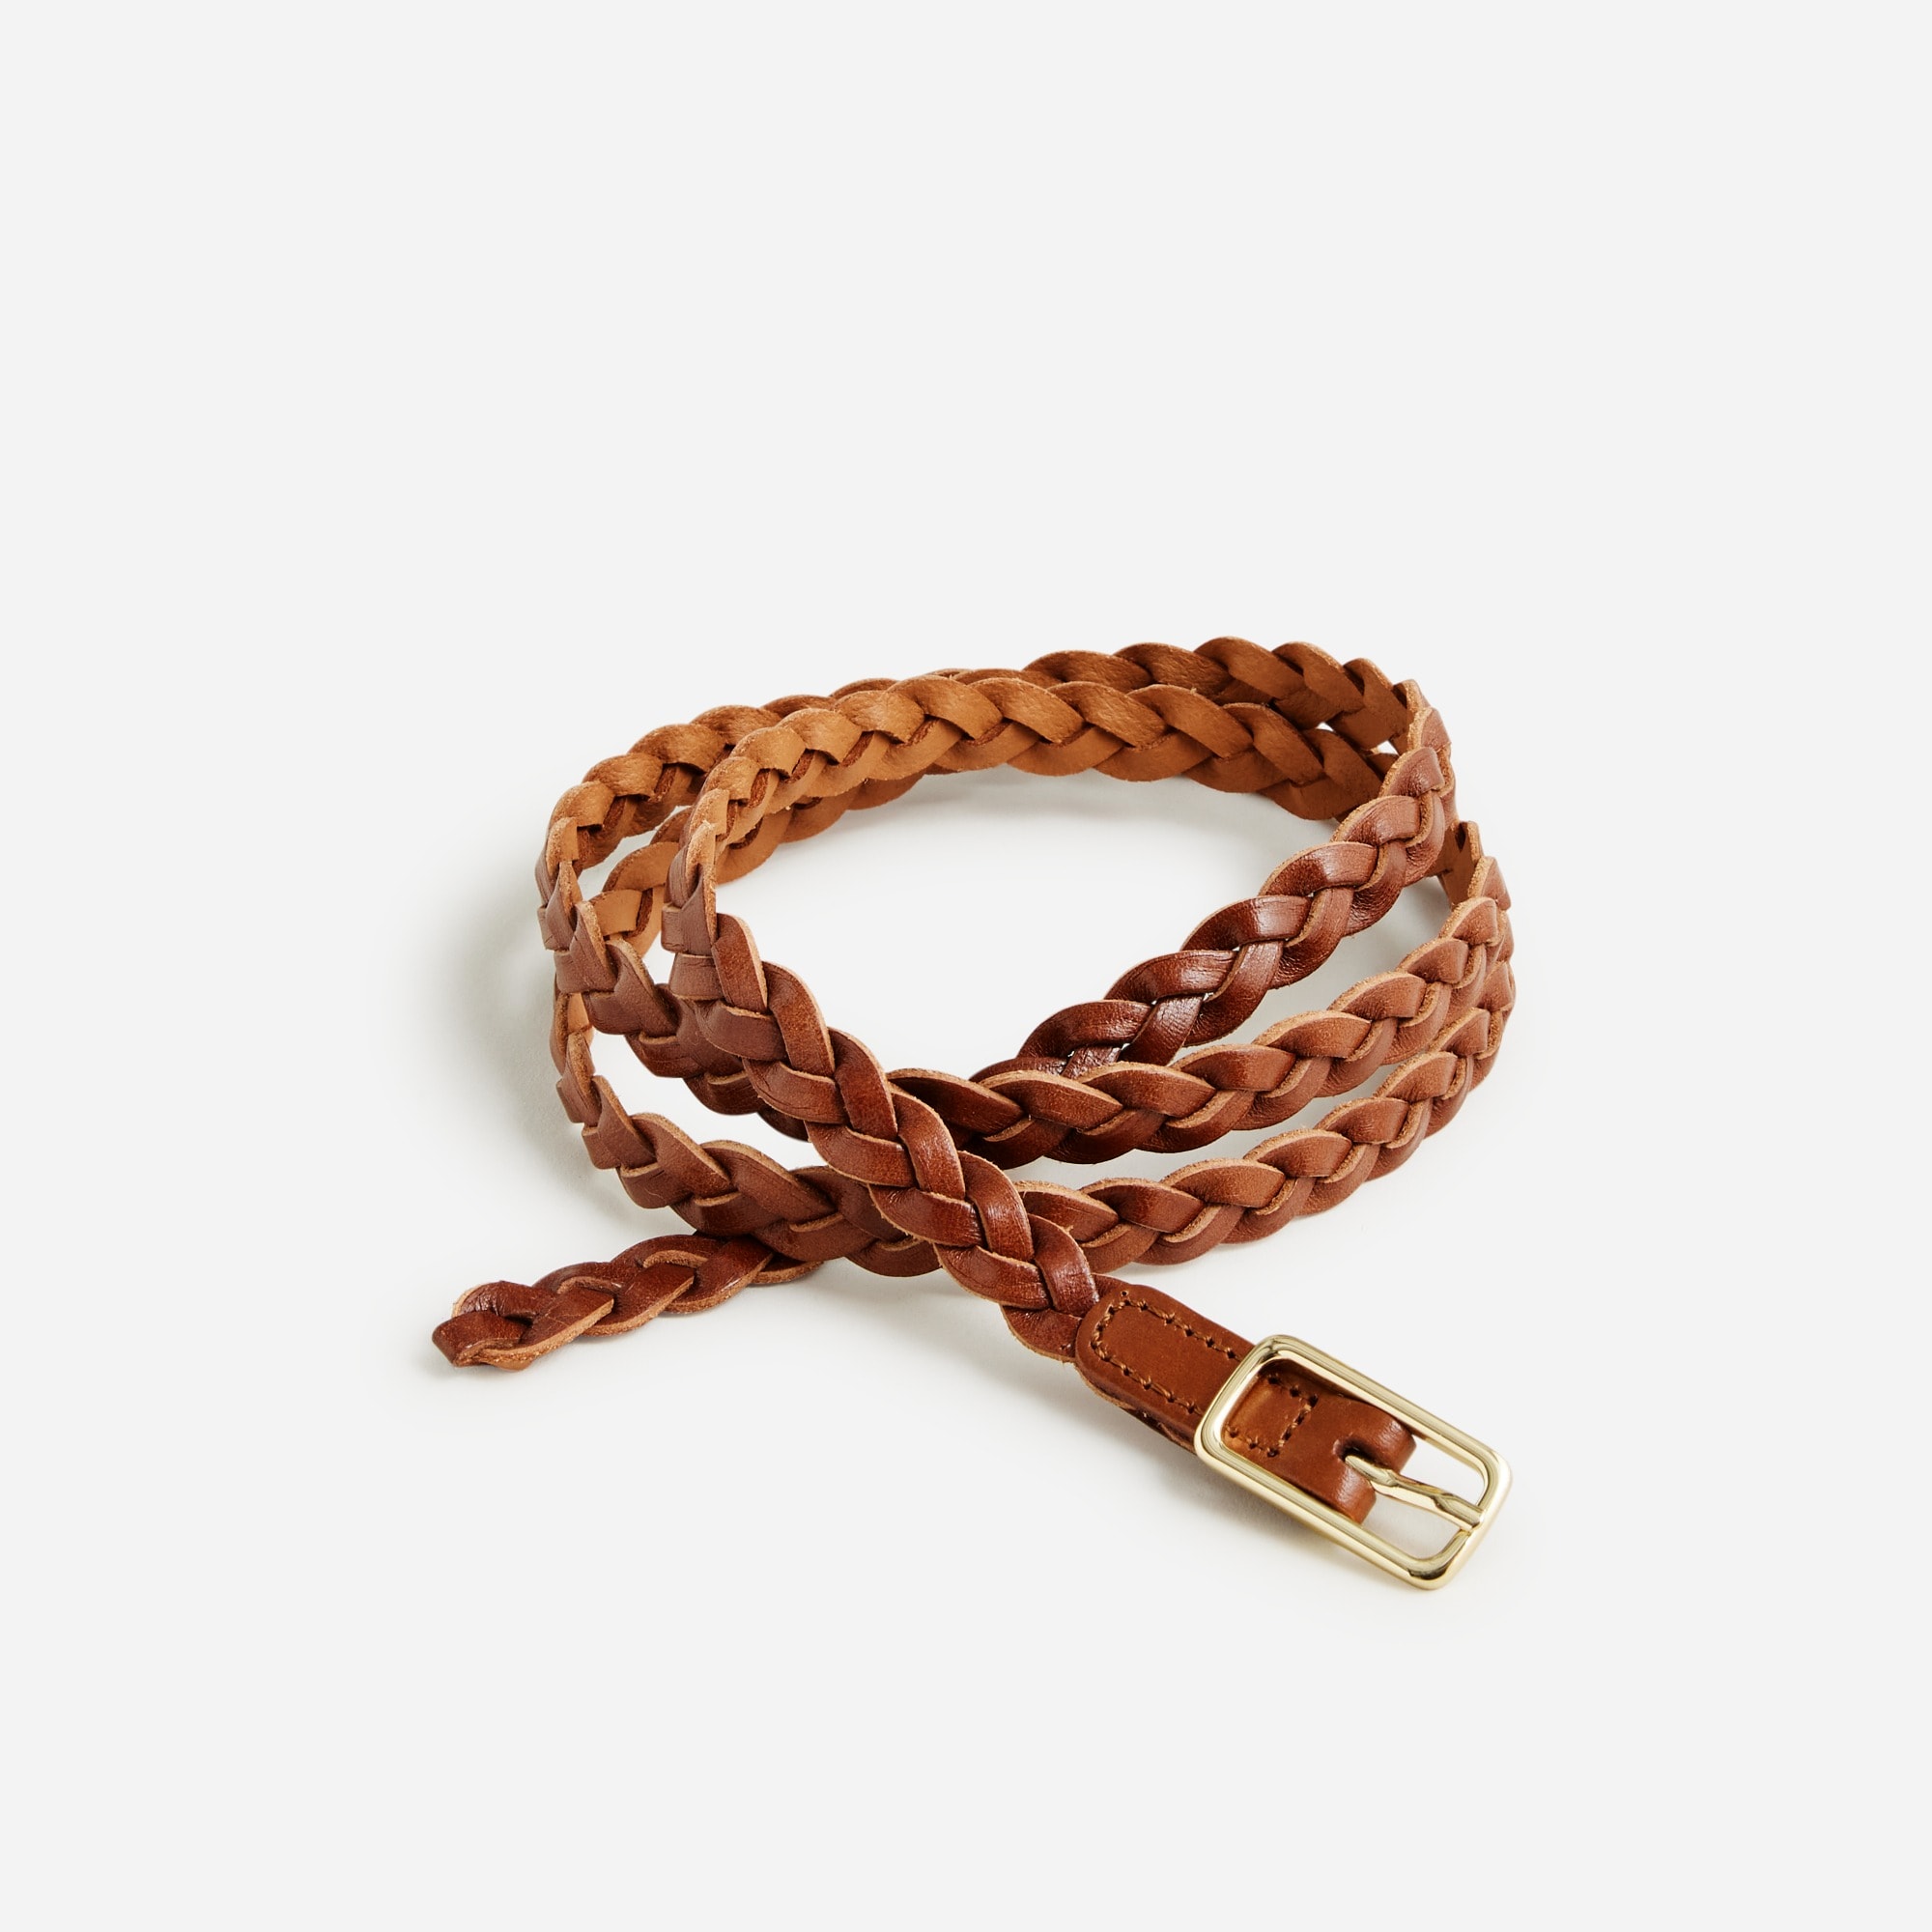 Jcrew Skinny braided belt in Italian leather